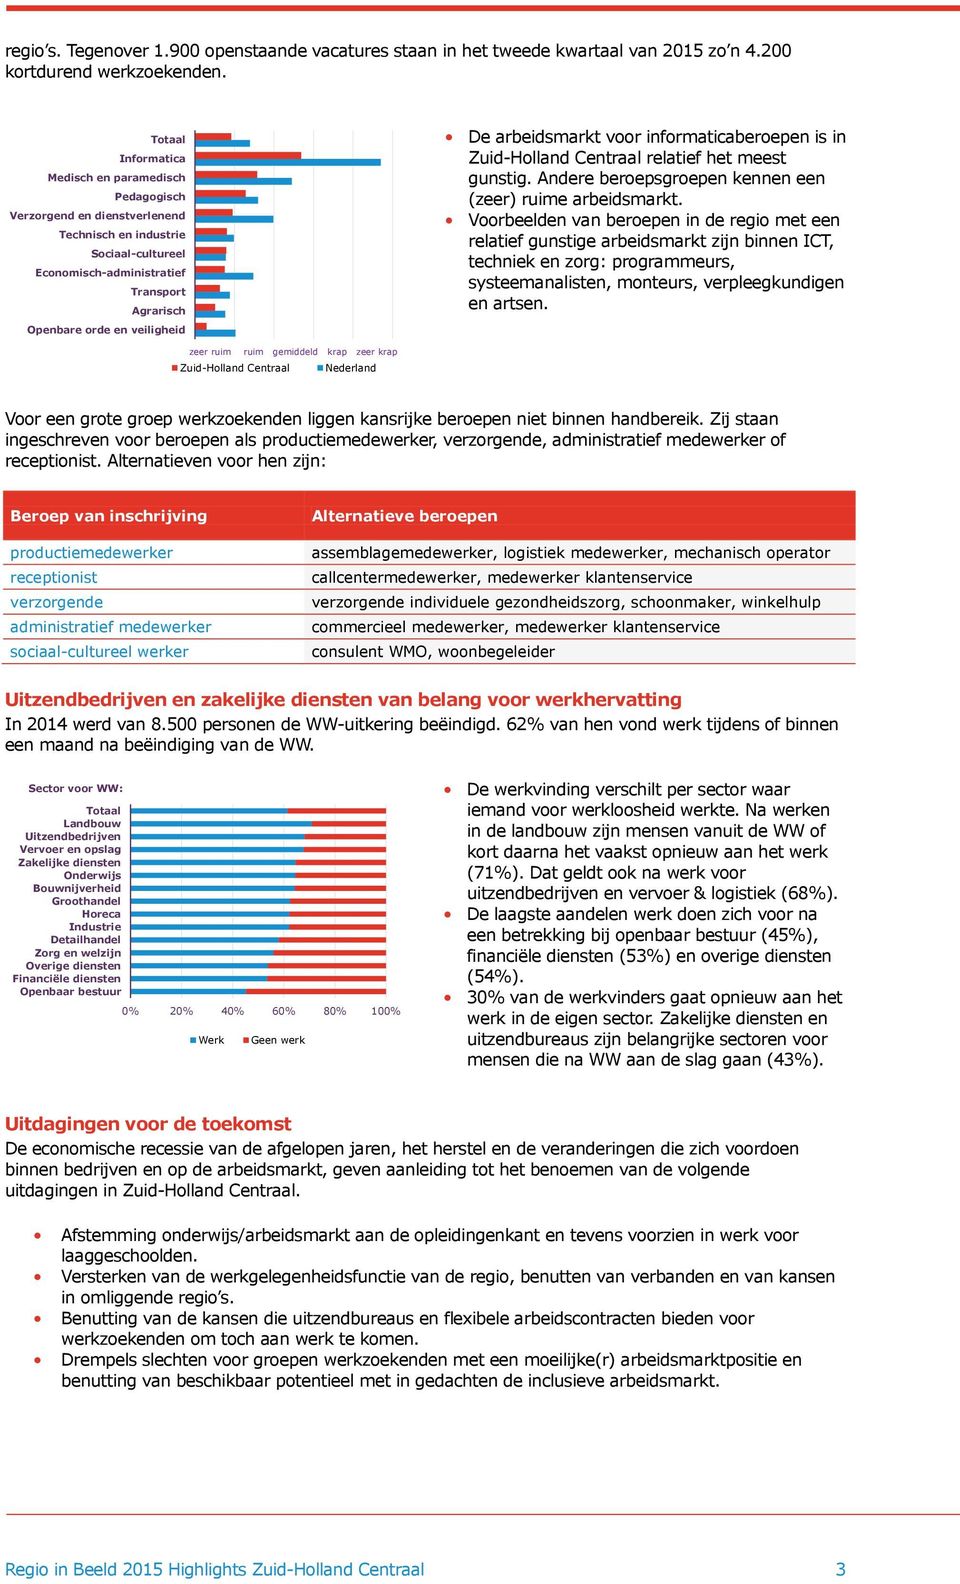 De arbeidsmarkt voor informaticaberoepen is in Zuid-Holland Centraal relatief het meest gunstig. Andere beroepsgroepen kennen een (zeer) ruime arbeidsmarkt.